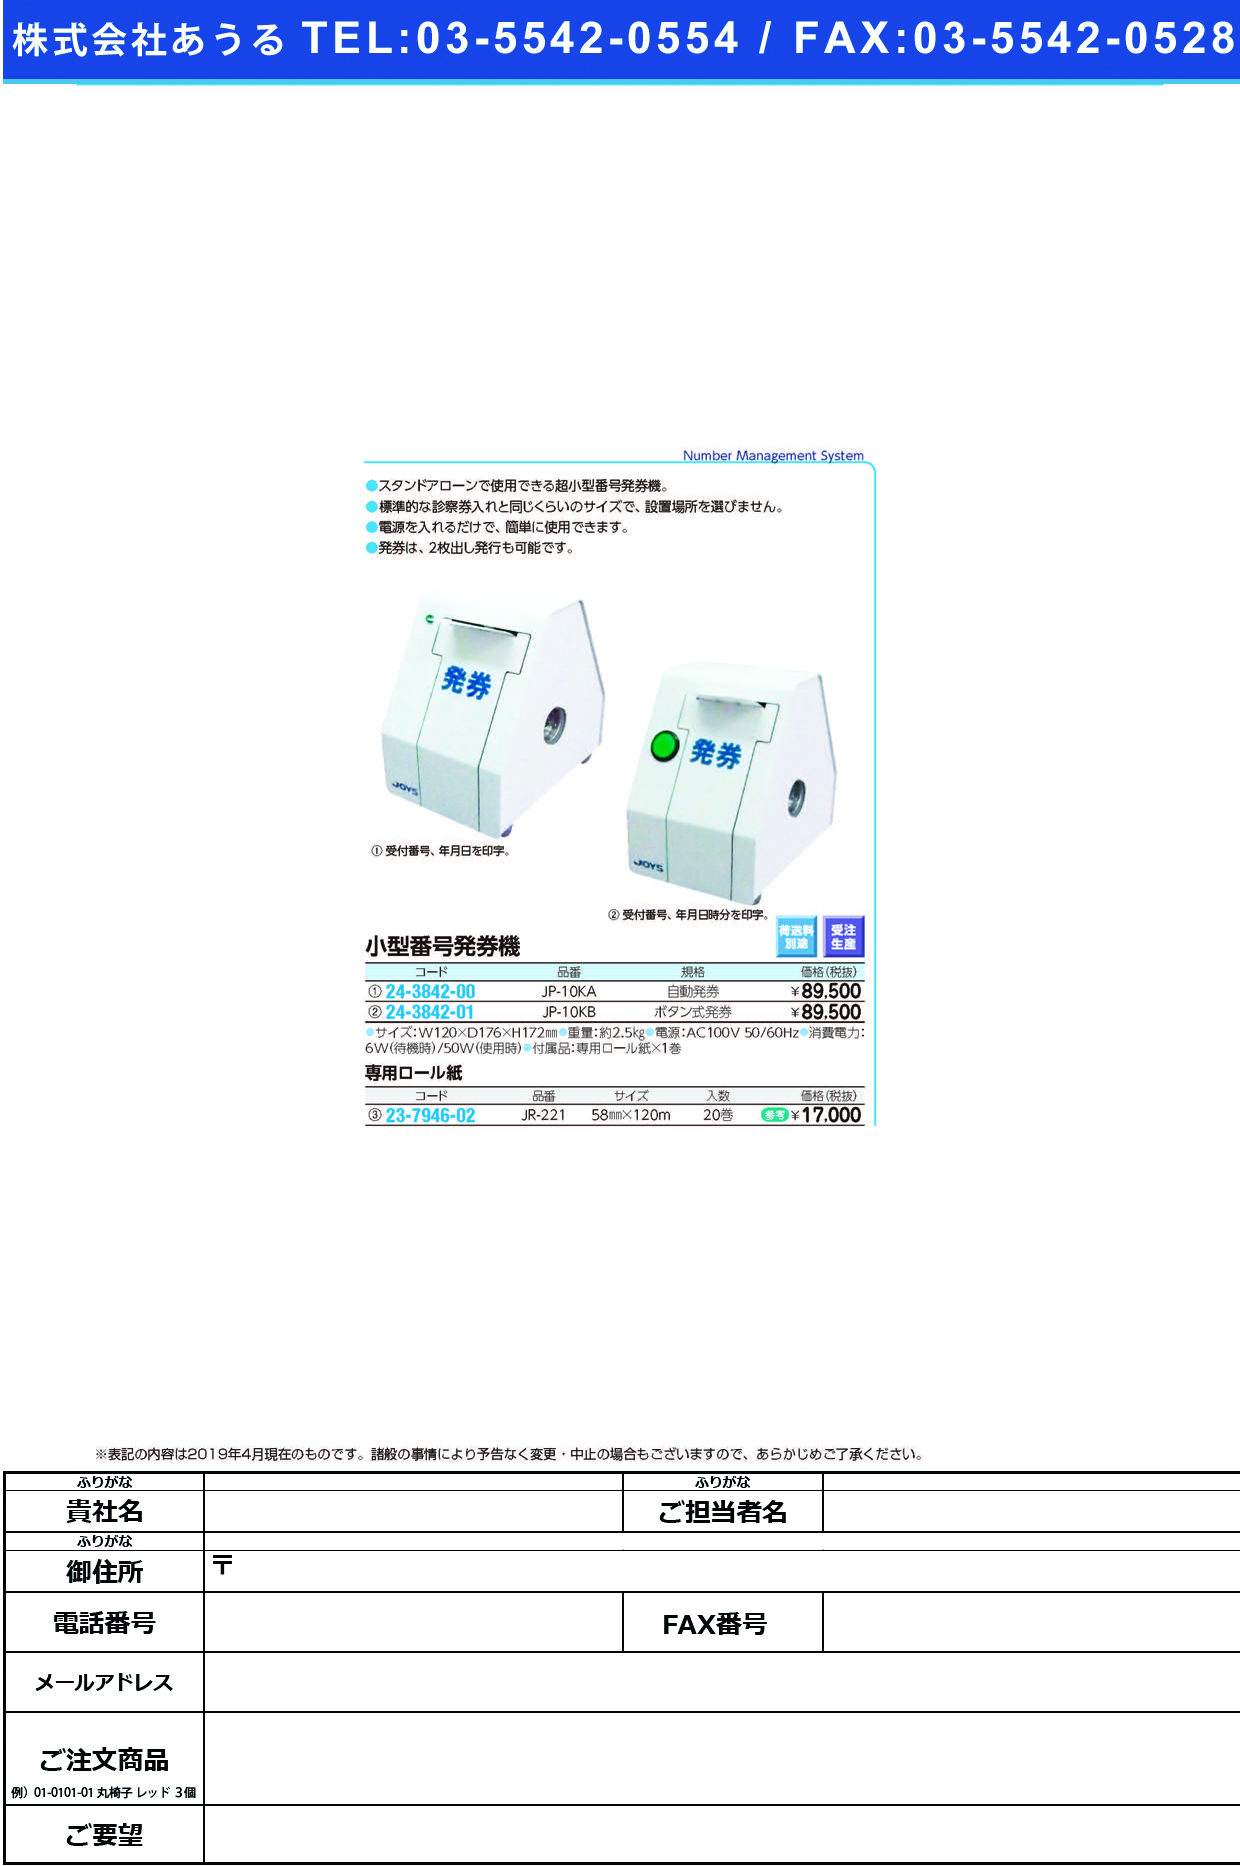 (24-3842-00)小型番号発券機（自動発券仕様） JP-10KA ｺｶﾞﾀﾊﾊｯｹﾝｷ(ｼﾞﾄﾞｳﾊｯｹﾝ【1台単位】【2019年カタログ商品】